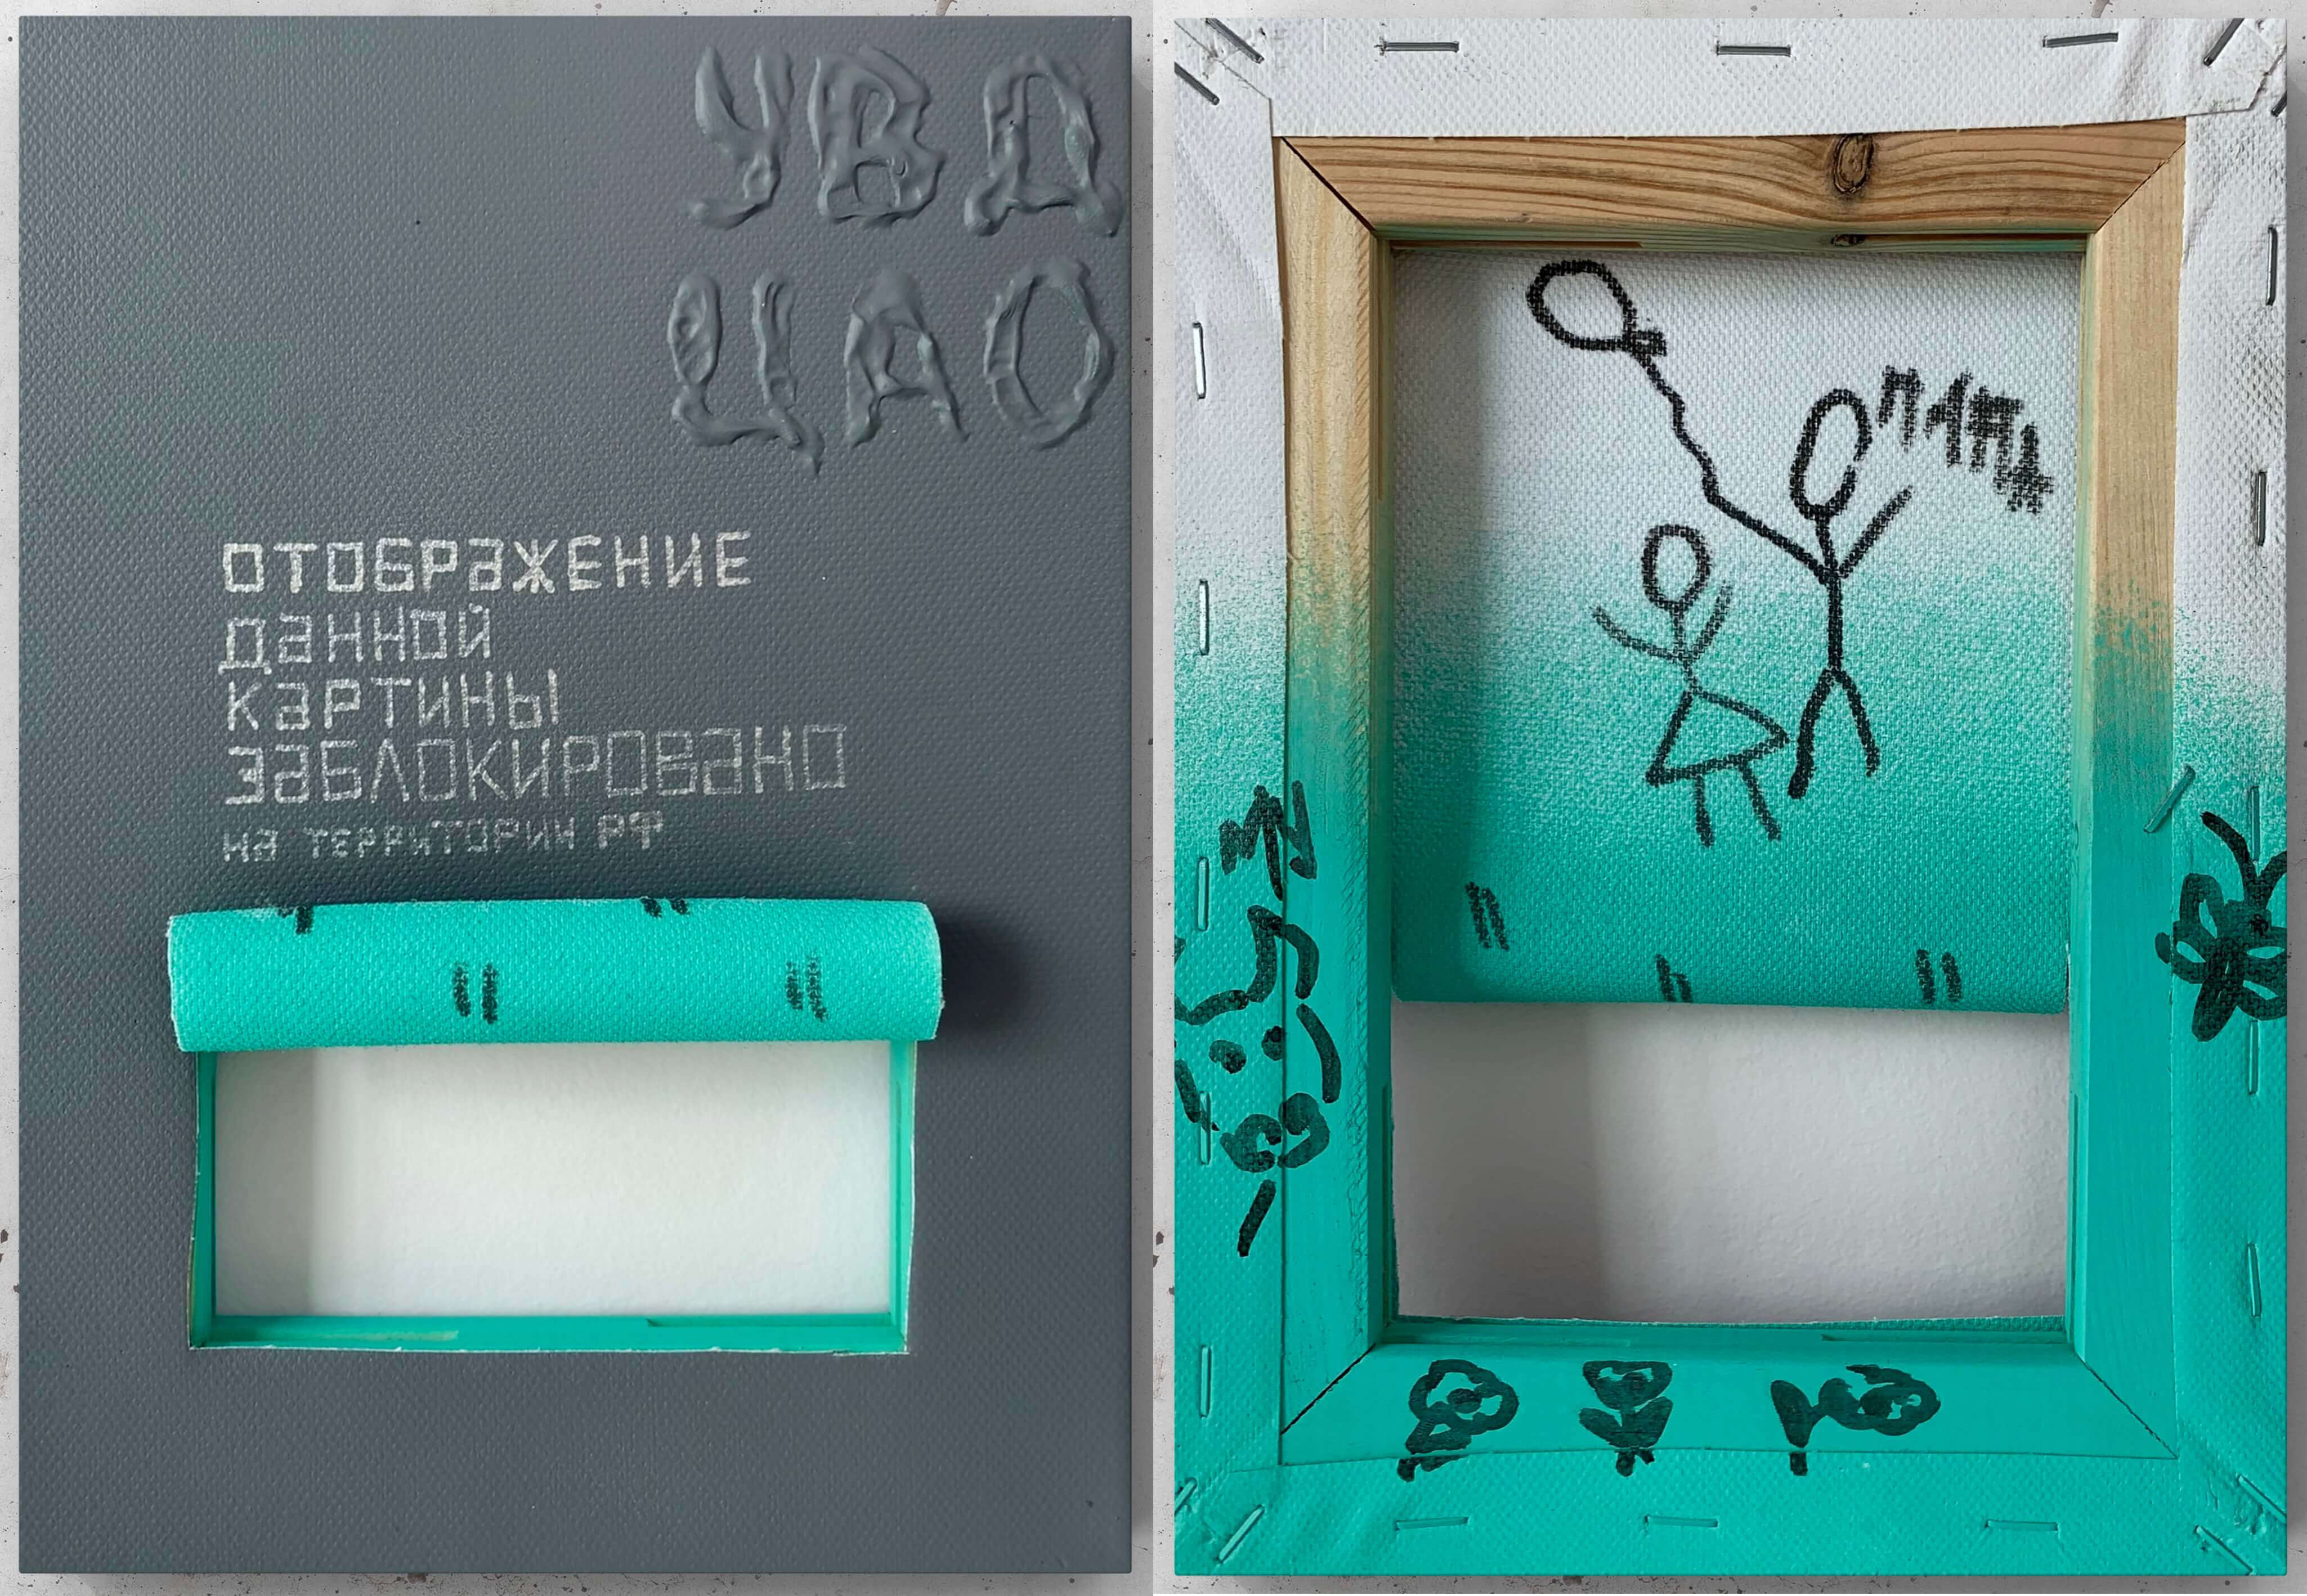 Картина современного российского художника Colonel Royce (Василий Круглов) в стиле концептуализм, поп-арт, минимализм. Цвета: серый, бирюзовый, чёрный, серебряный. Сюжет: интернет, блокировки, цензура, наивизм. Можно купить